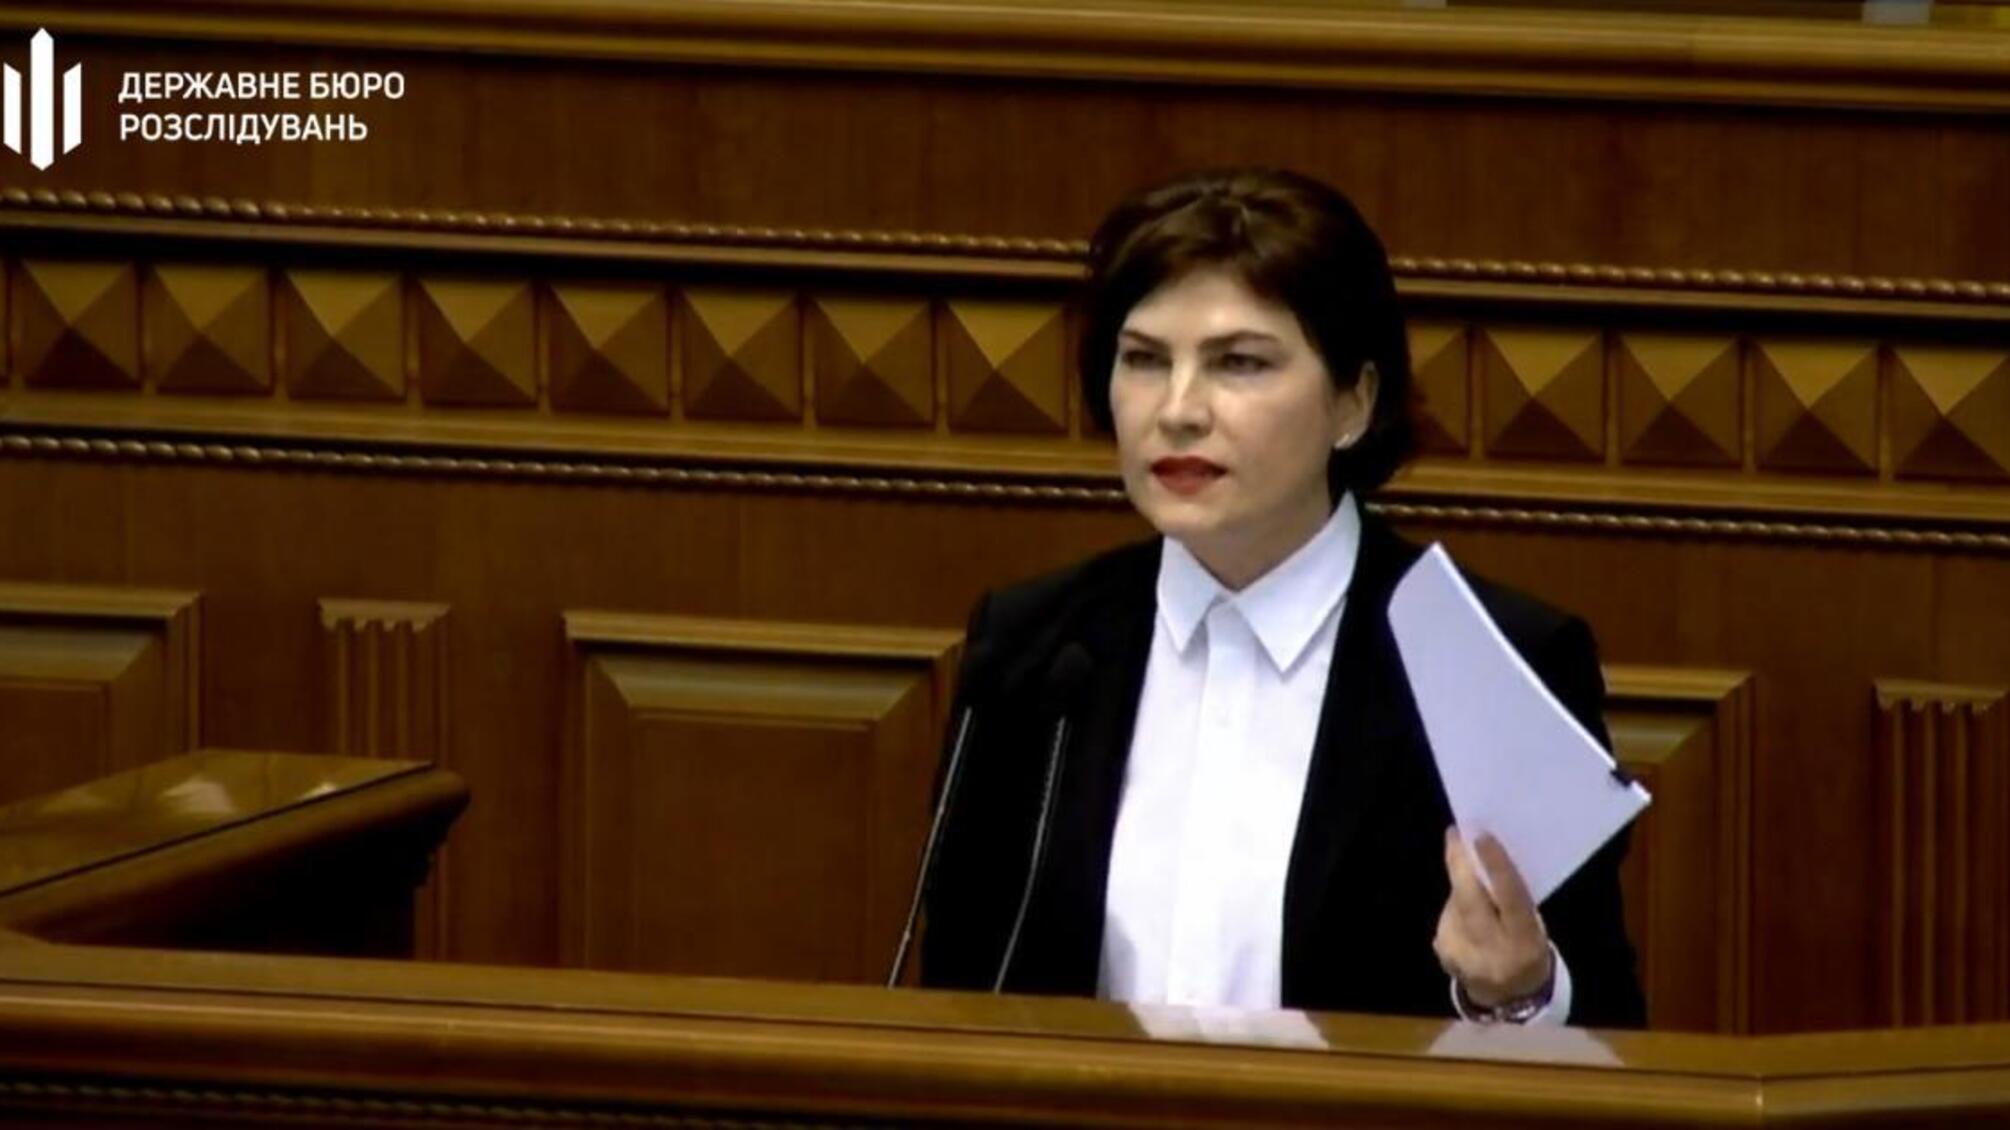 Ірина Венедіктова: «ДБР поза політикою і для нас всі рівні перед законом»